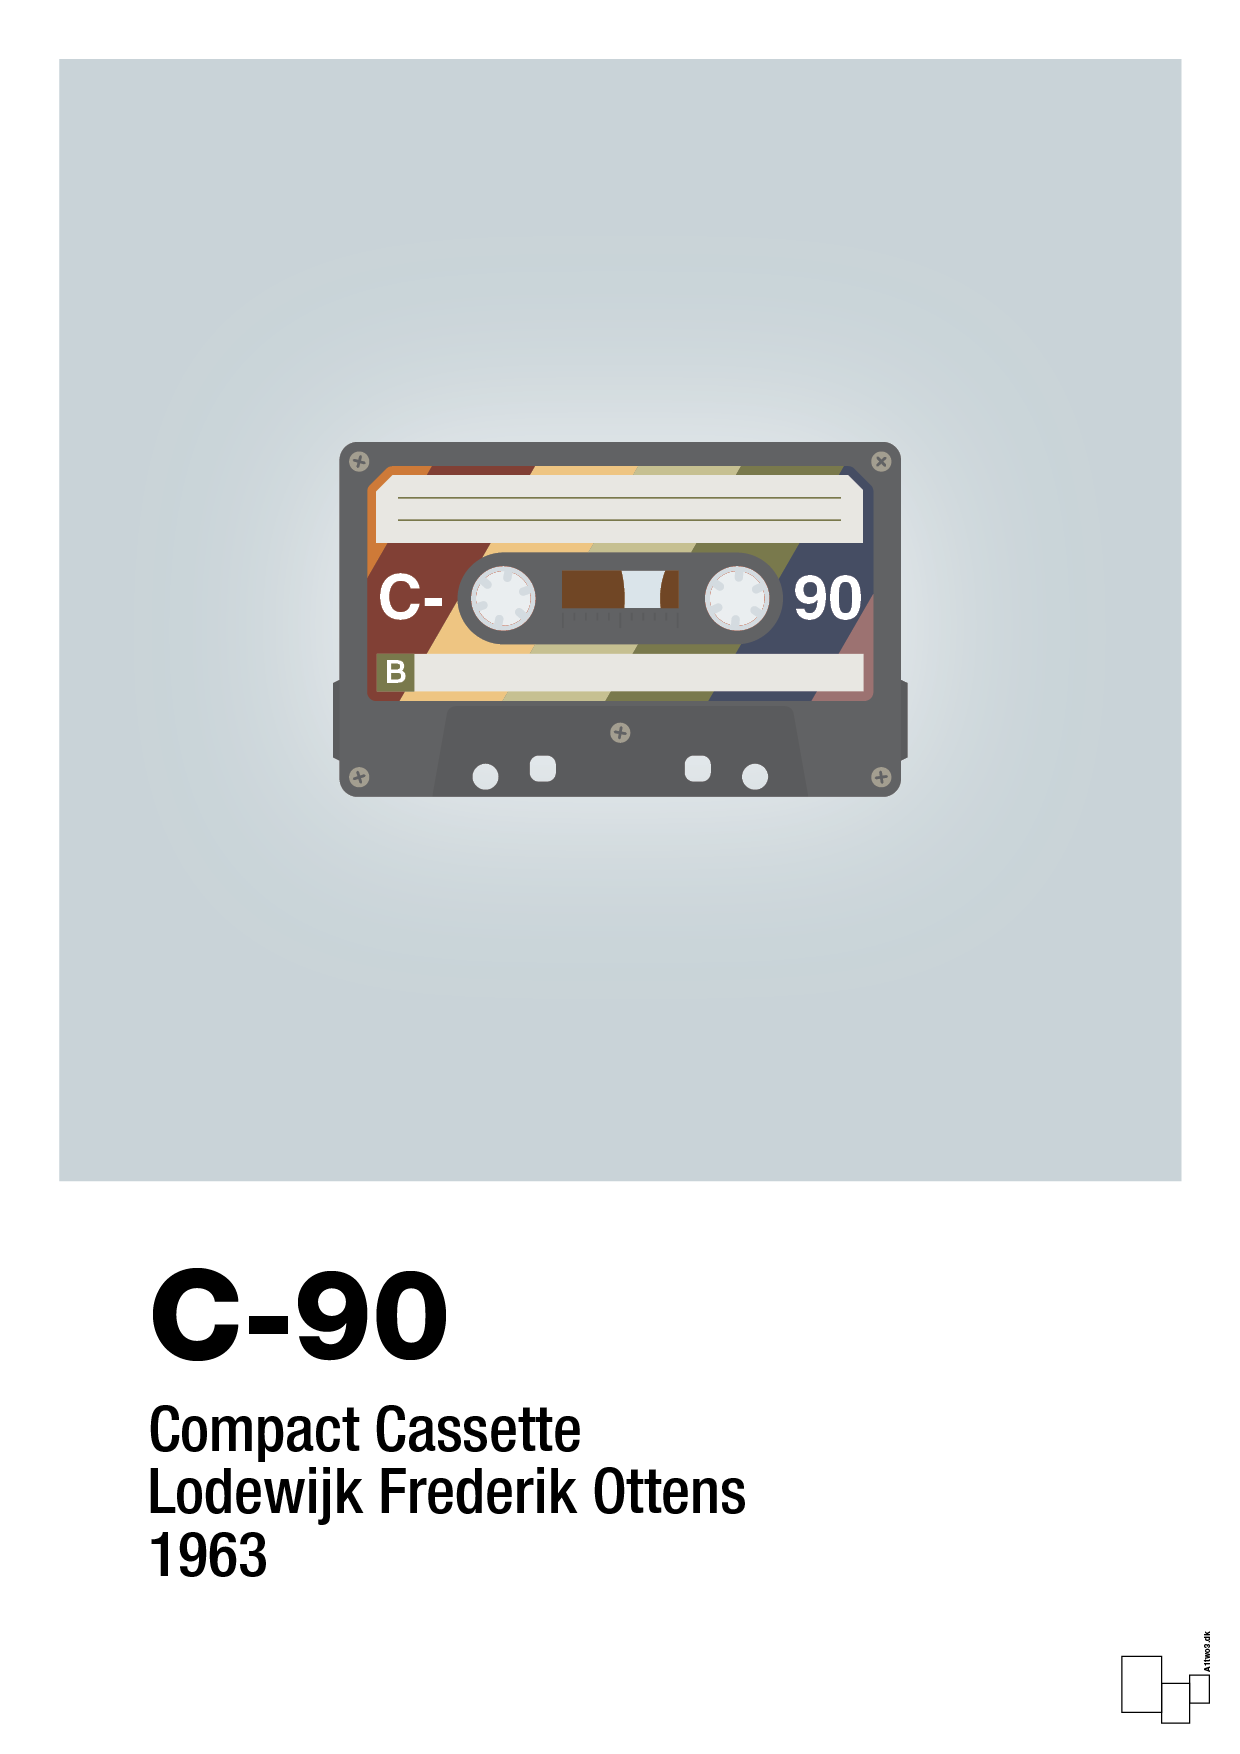 kassettebånd c-90 - Plakat med Grafik i Light Drizzle